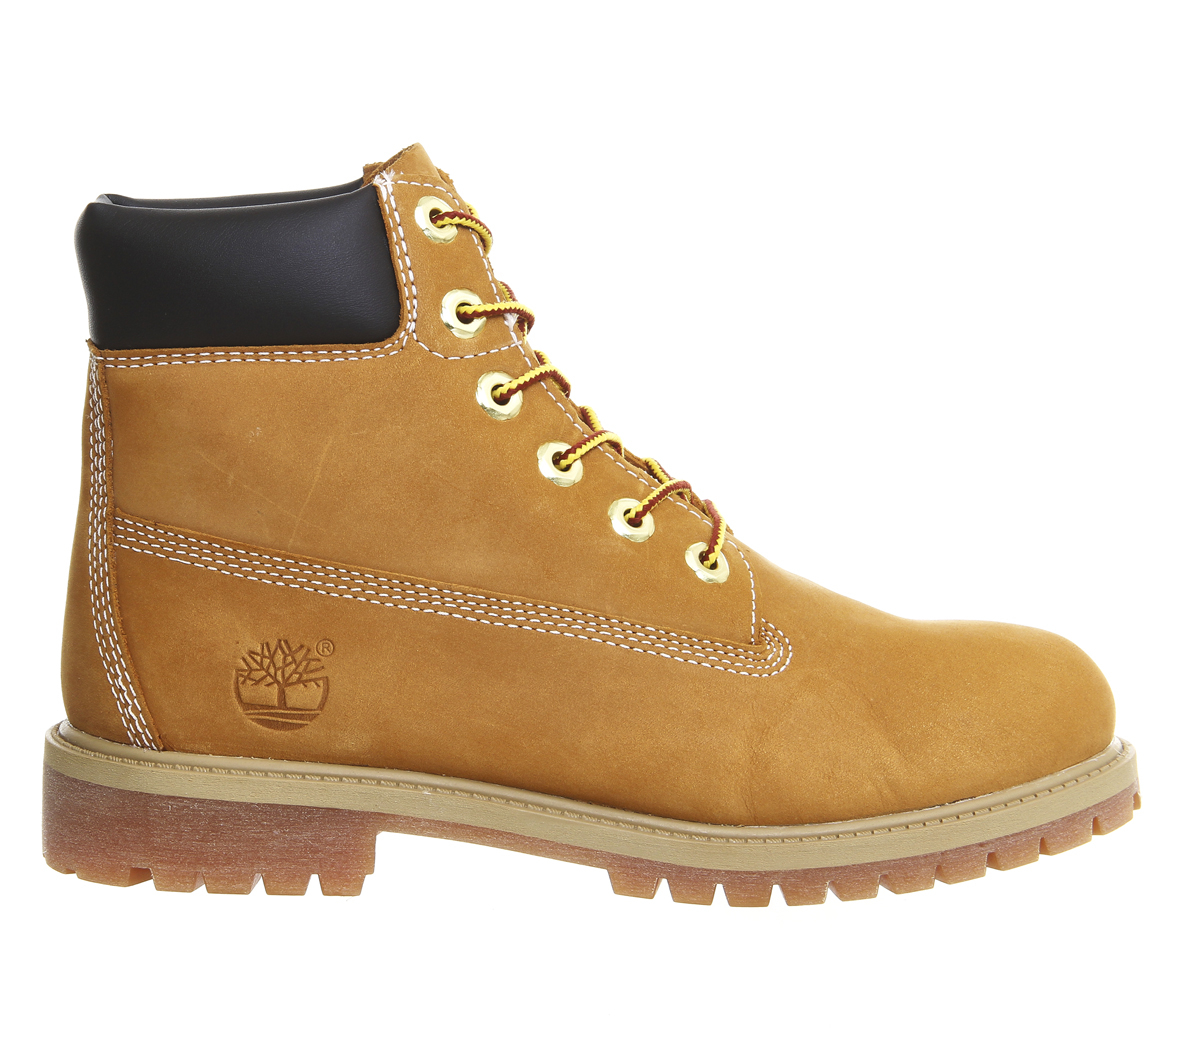 waterproof boot blog: Timberland Juniors 6 Inch Premium Waterproof Boots in